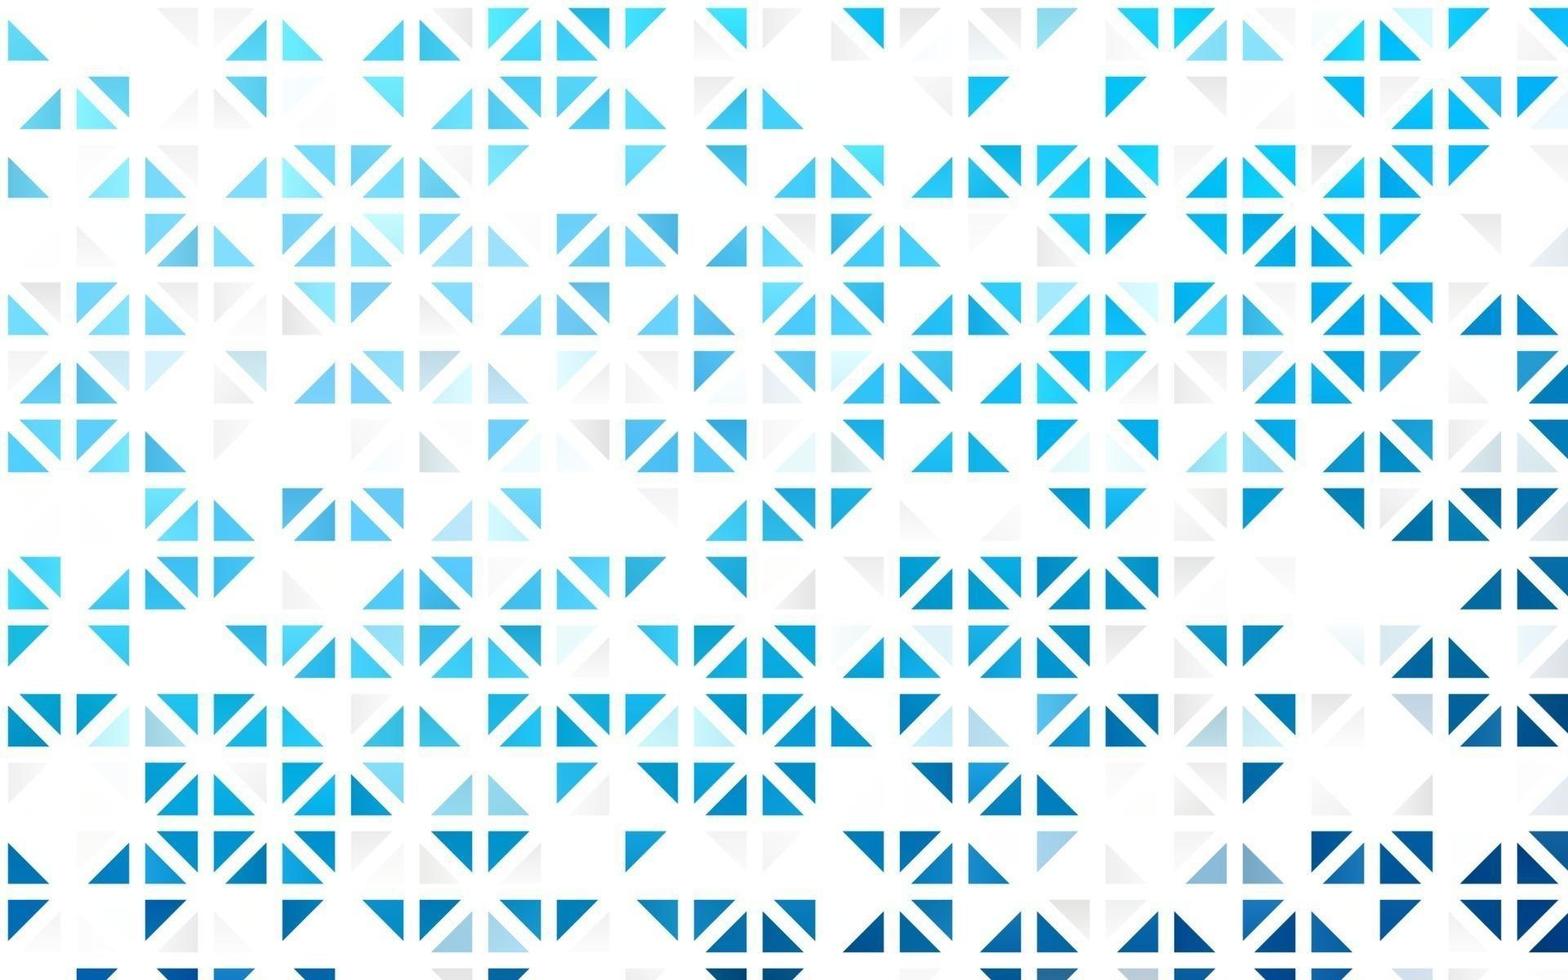 couverture transparente de vecteur bleu clair dans un style polygonal.